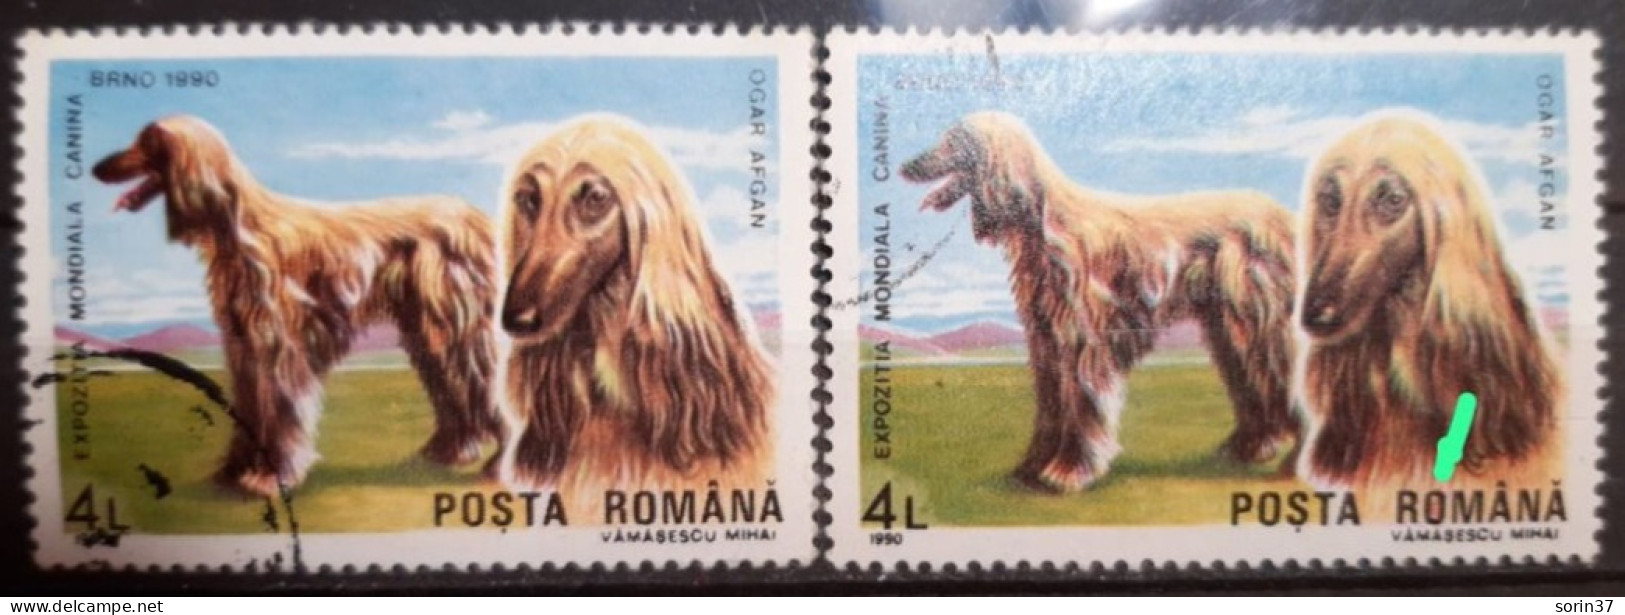 RUMANIA / ROMANIA / Error Año 1990 Yvert Nr. 3875 Usado O De Romania, Rojo Por Dentro - Variedades Y Curiosidades